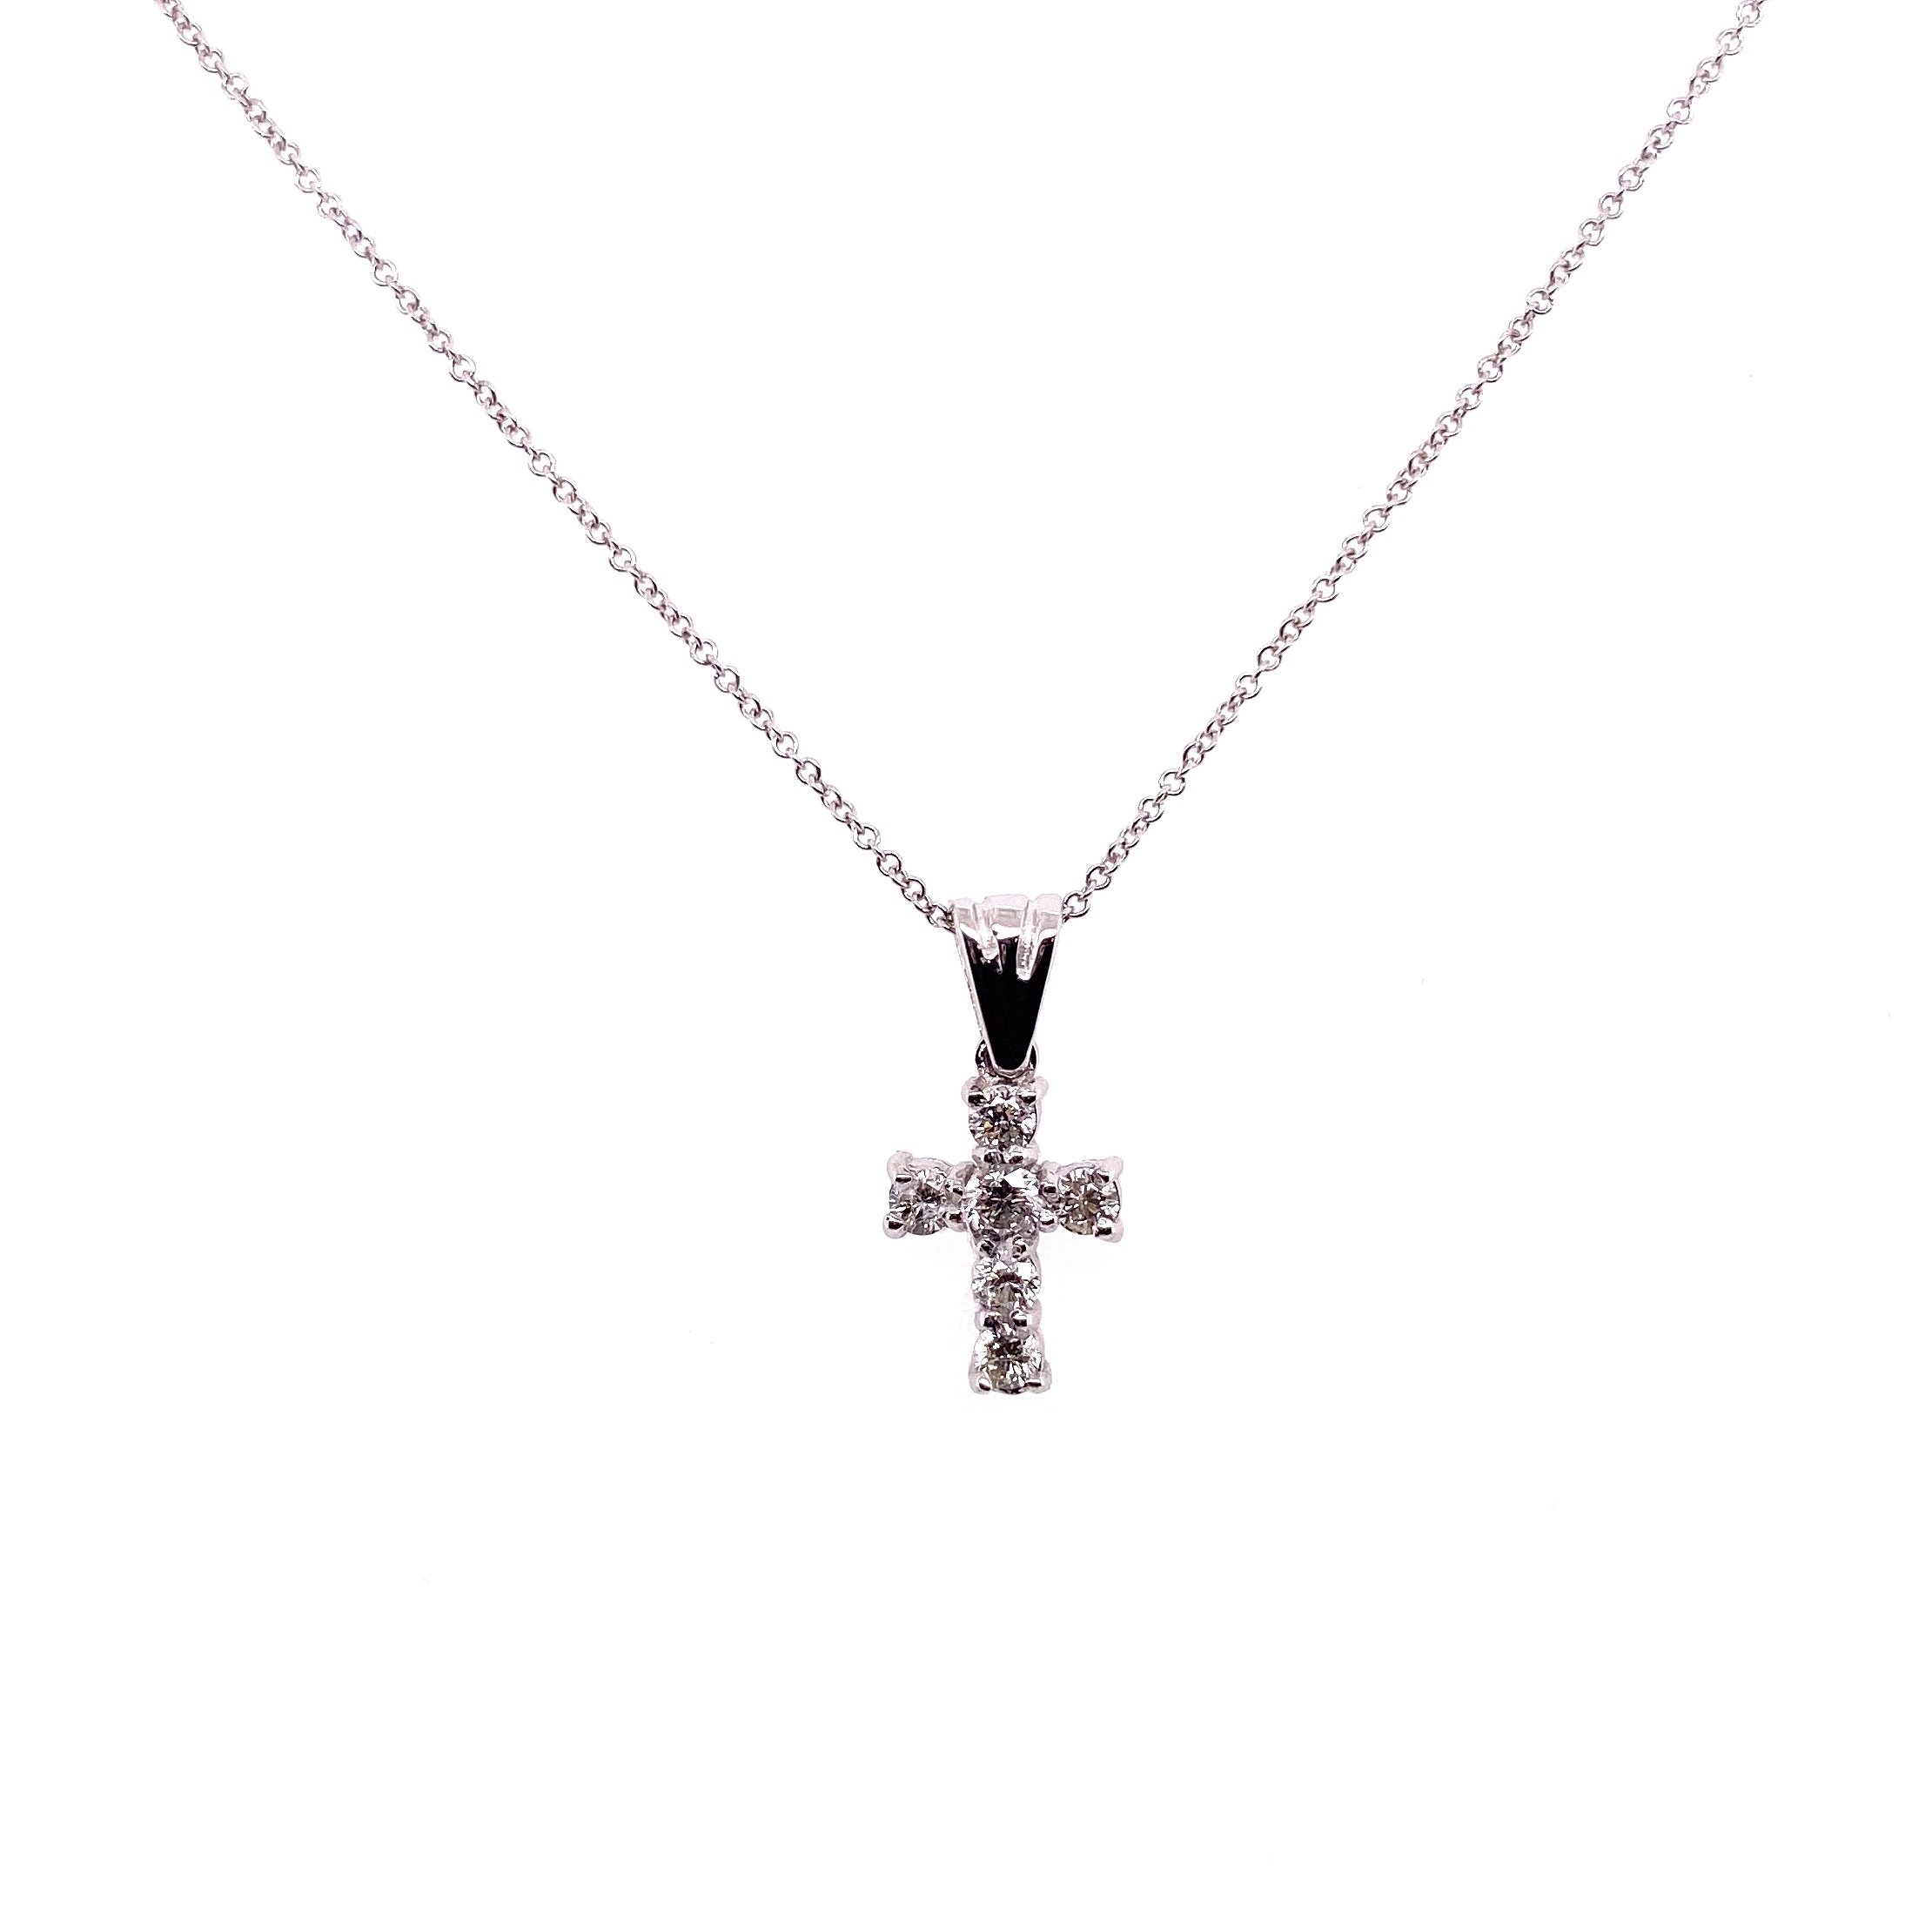 14K WG Petite Pave Diamond Cross Necklace .24tcw, 16-18"